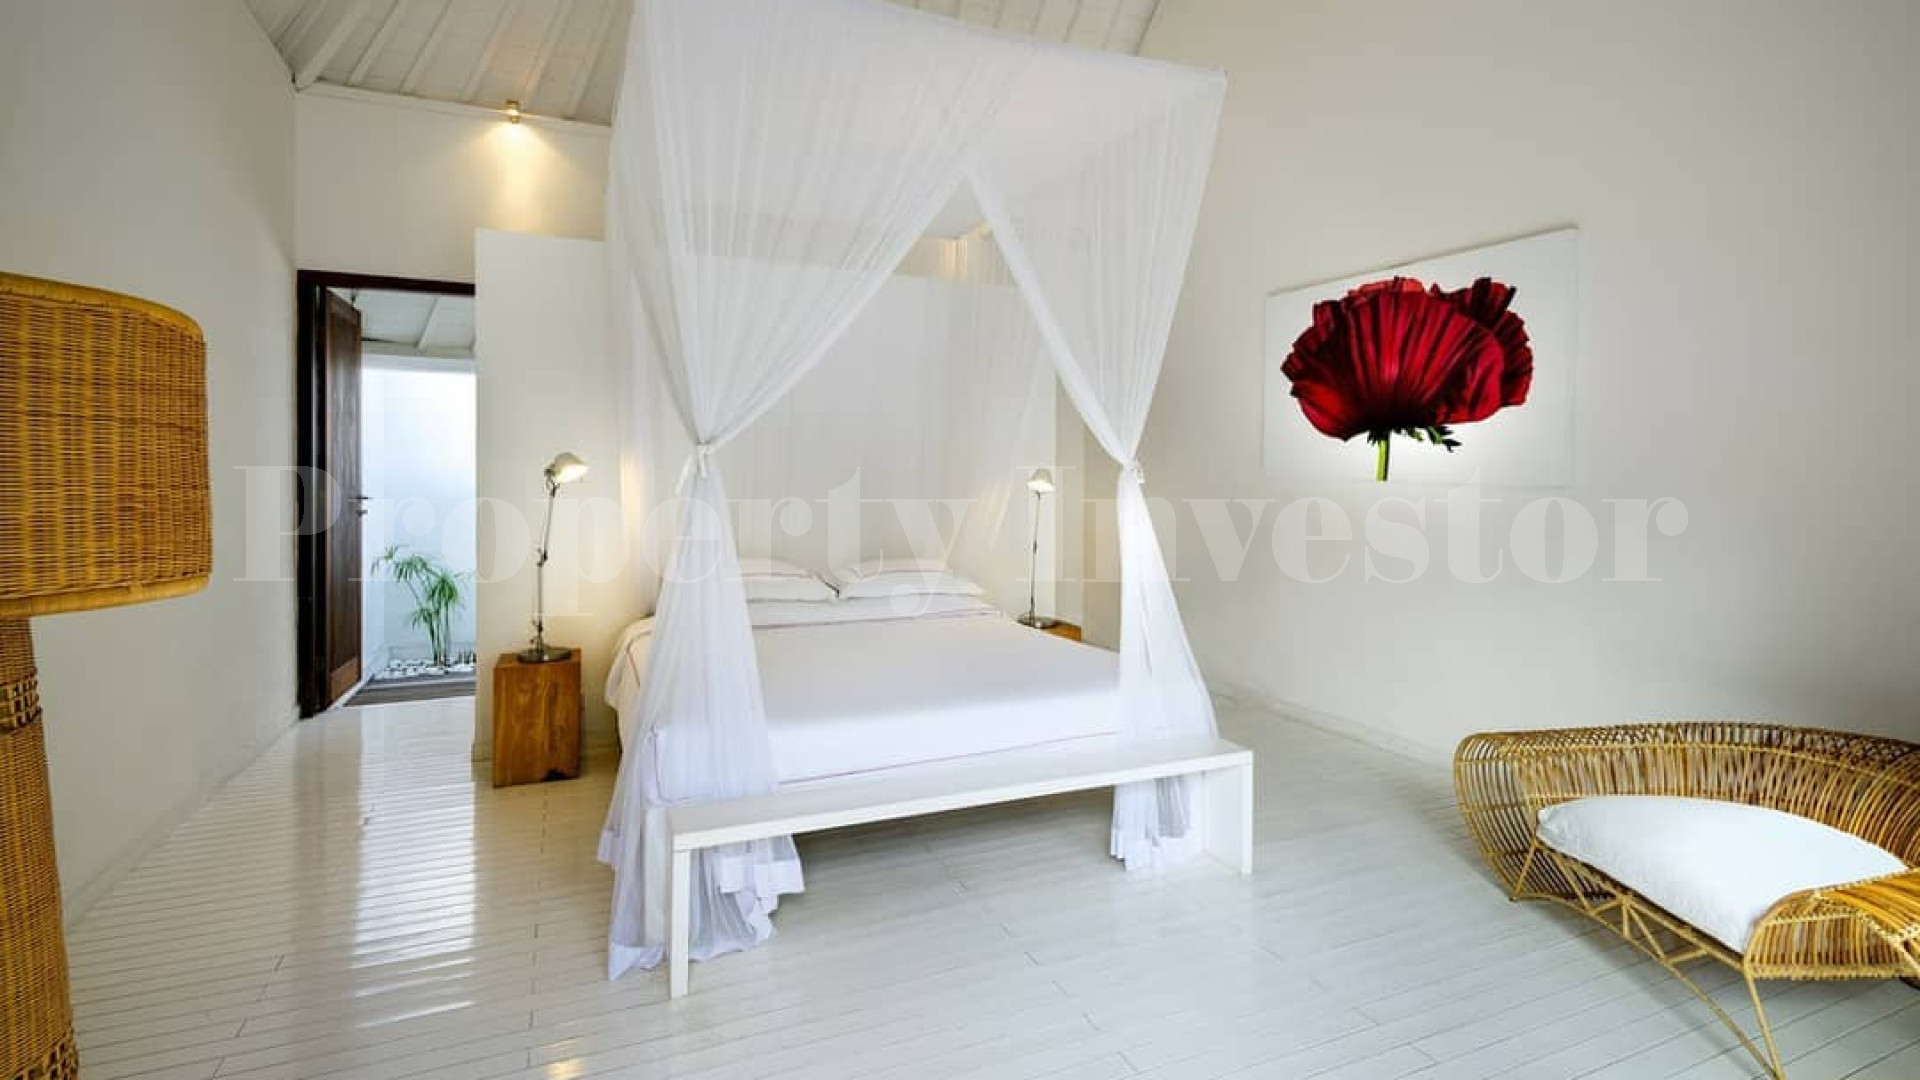 Lavish 4 Bedroom Contemporary Estate for Sale in Upscale Umalas, Bali